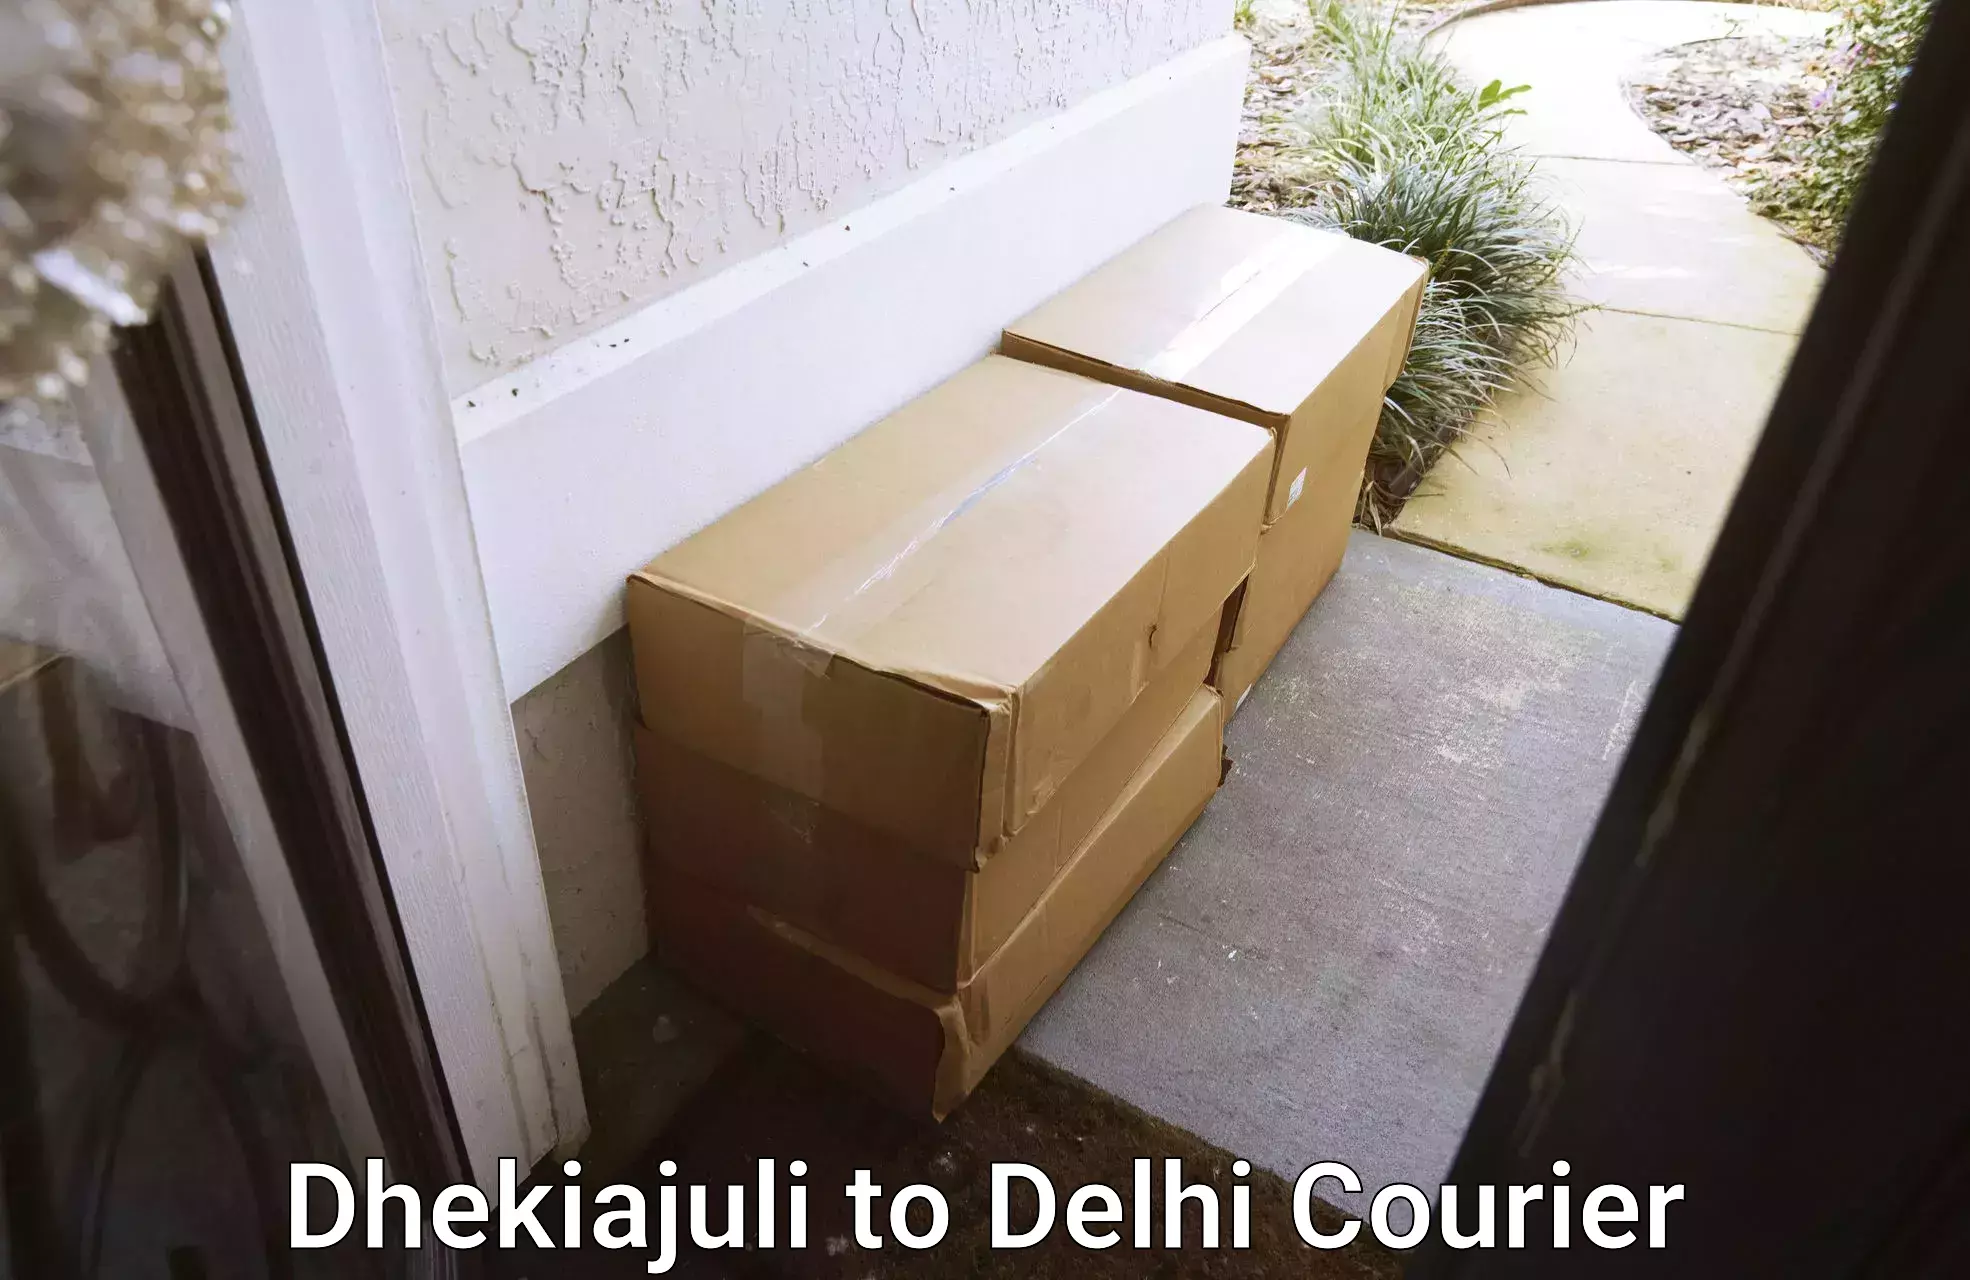 Ground shipping Dhekiajuli to East Delhi